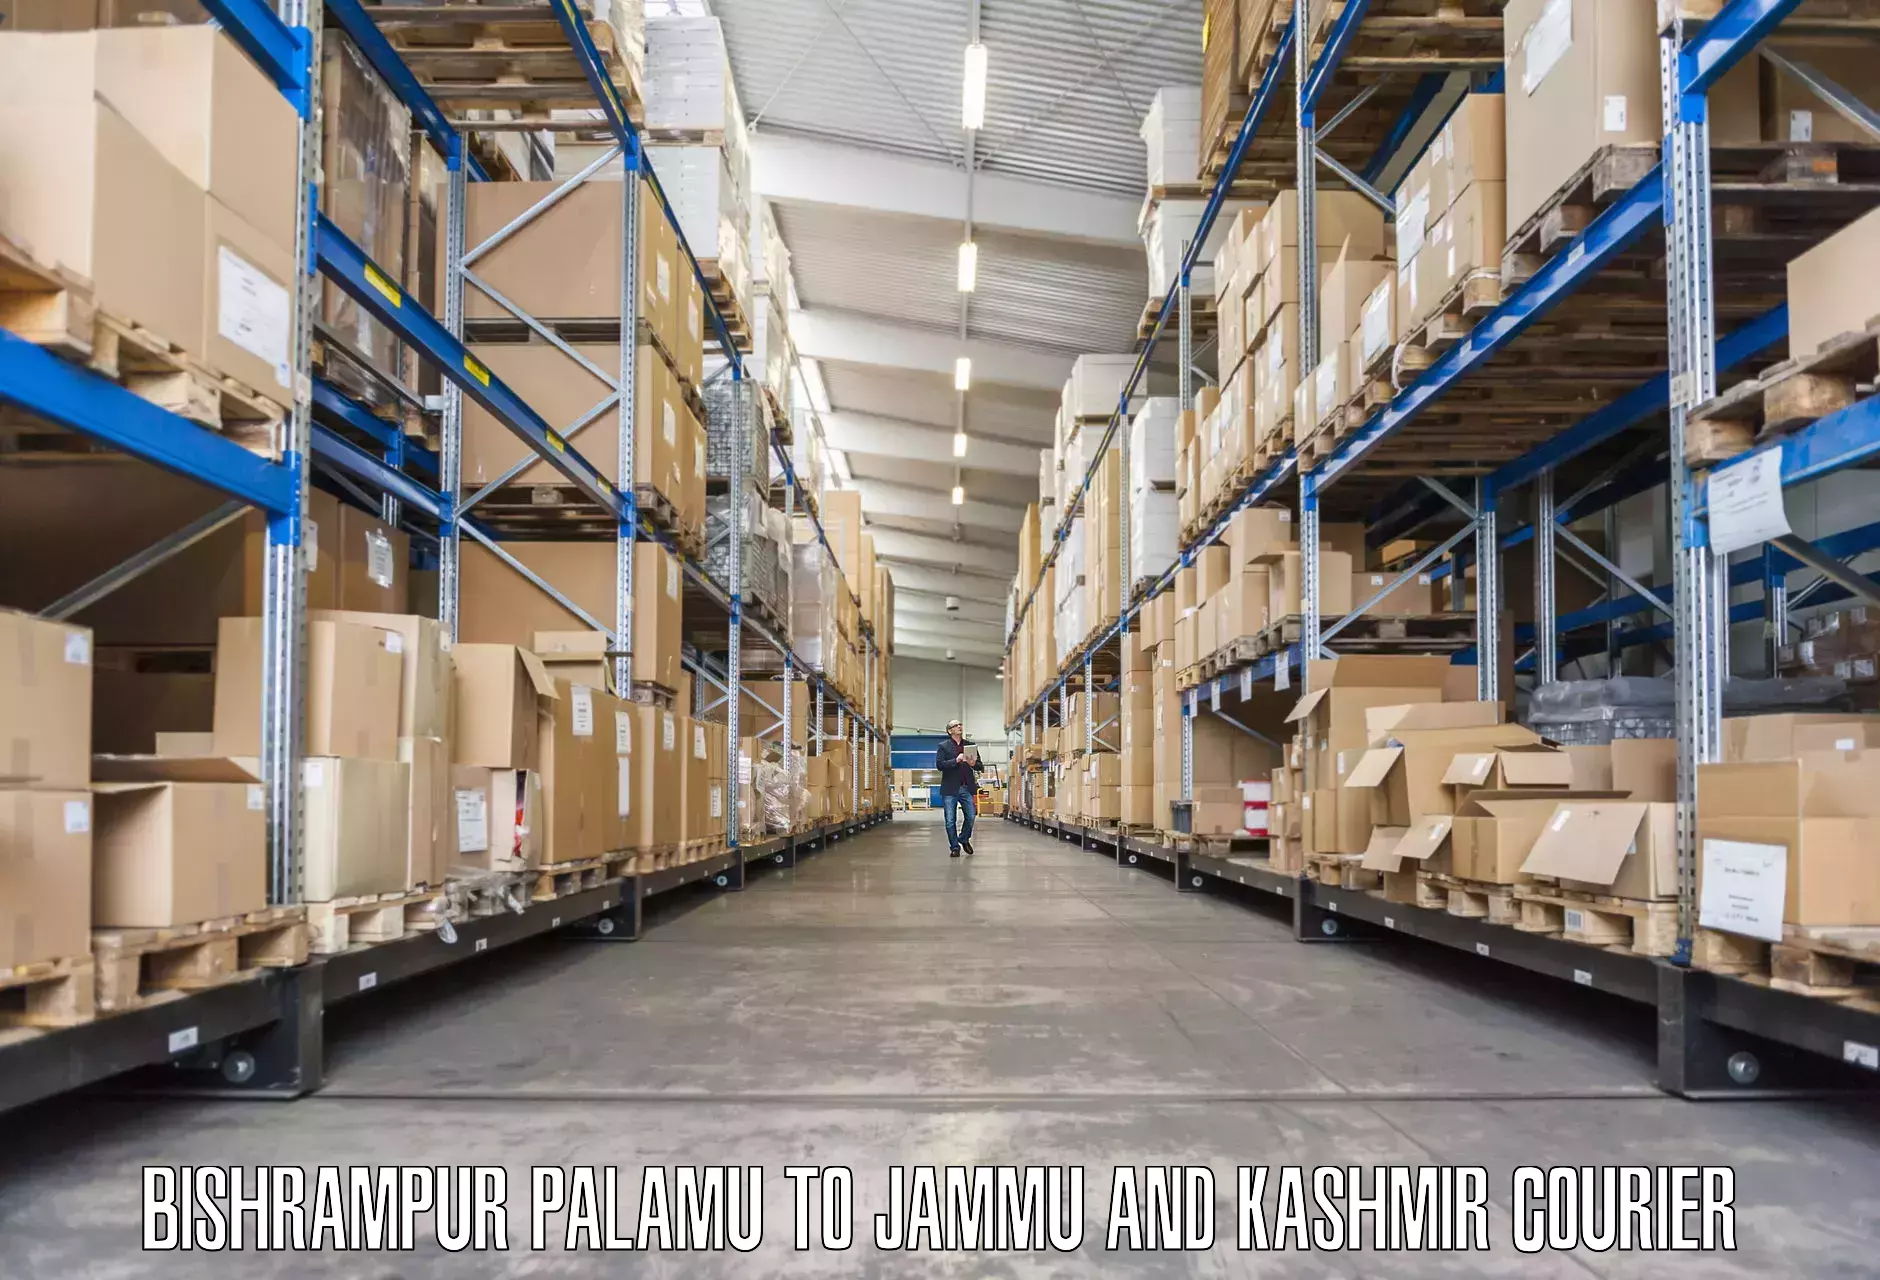 Furniture delivery service in Bishrampur Palamu to Jammu